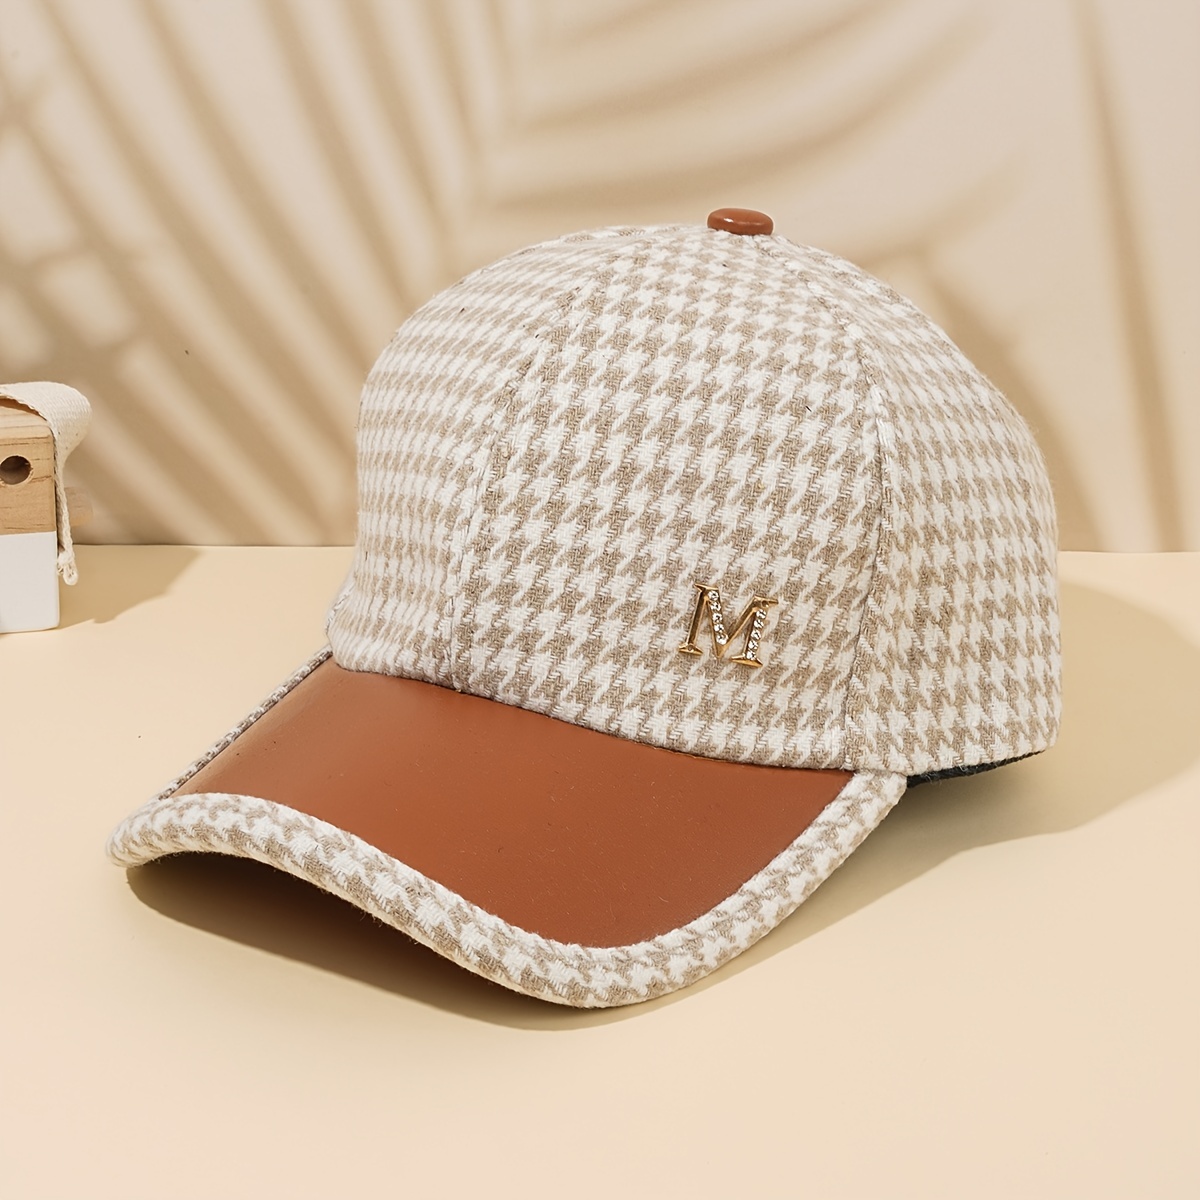 Louis Vuitton Men's Cap